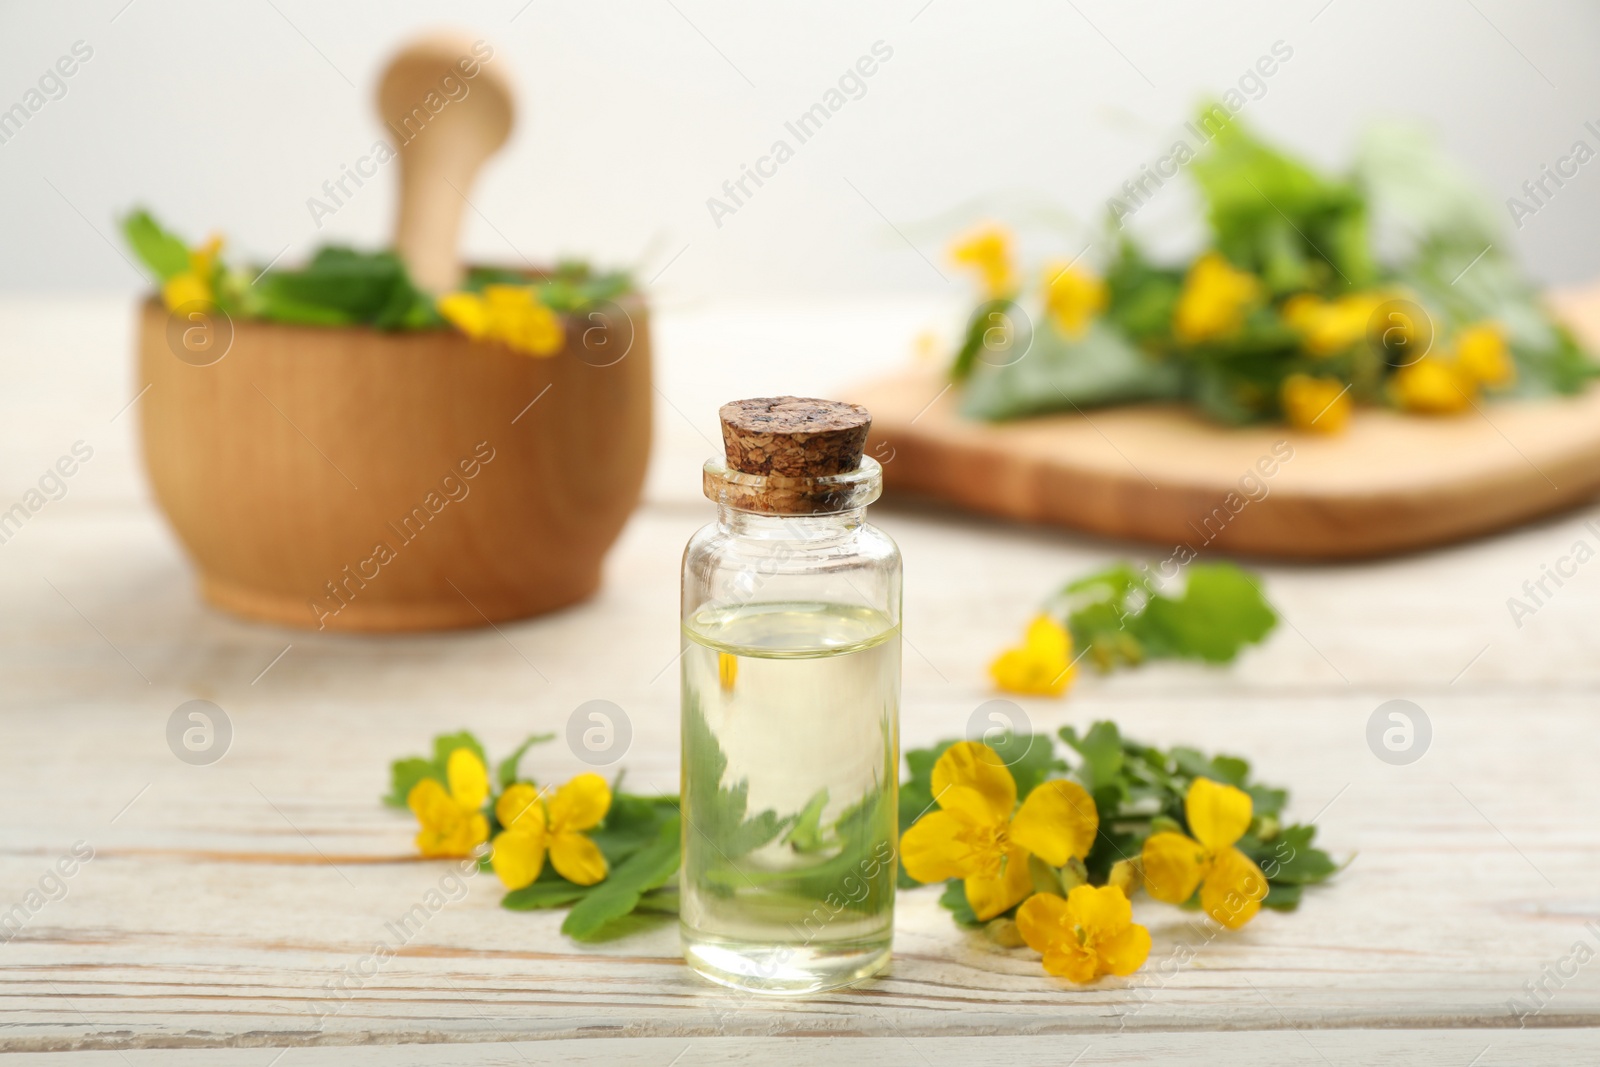 Photo of Bottle of natural celandine oil near flowers on white wooden table